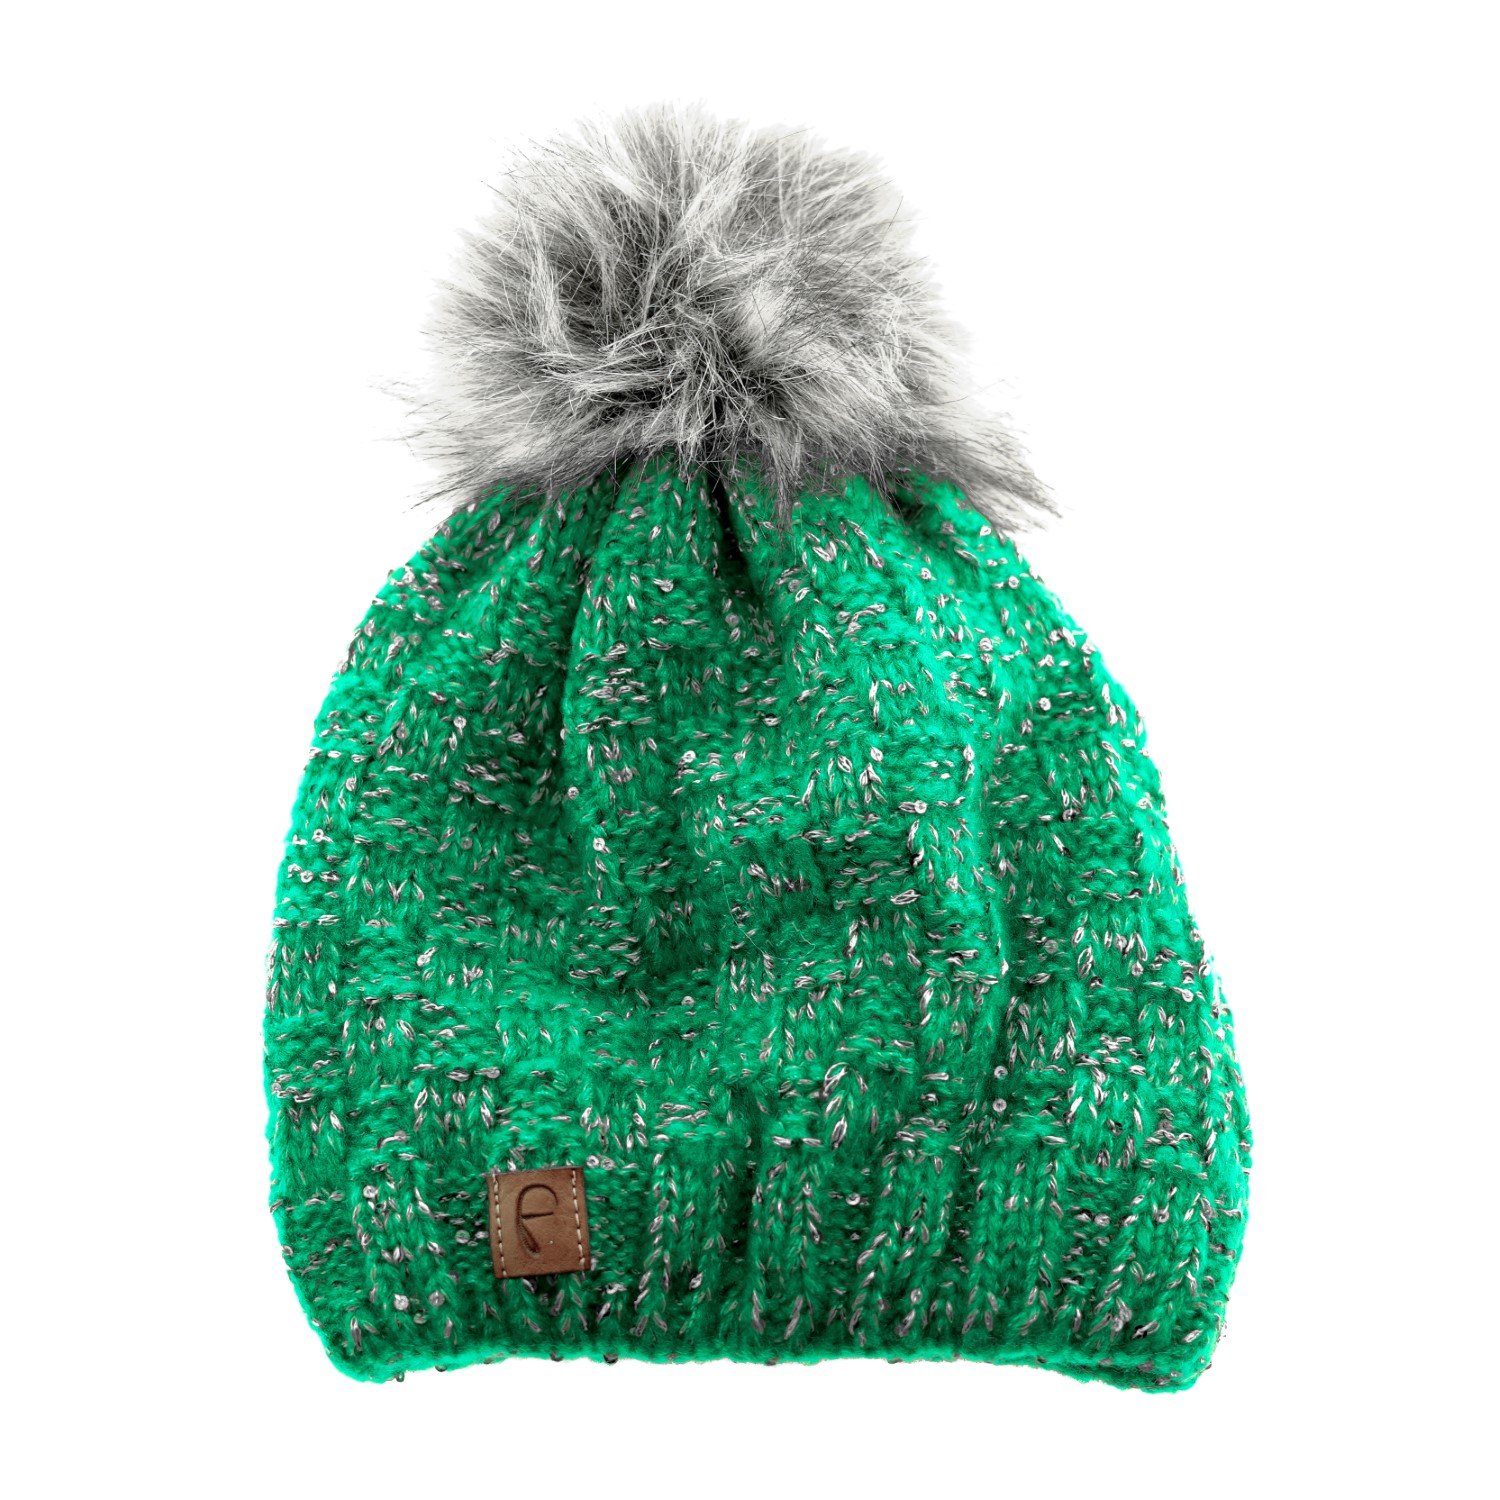 Faera Bommelmütze Mütze zum Warmhalten im Herbst oder Winter Bommel-Mütze mit Perlen Grün